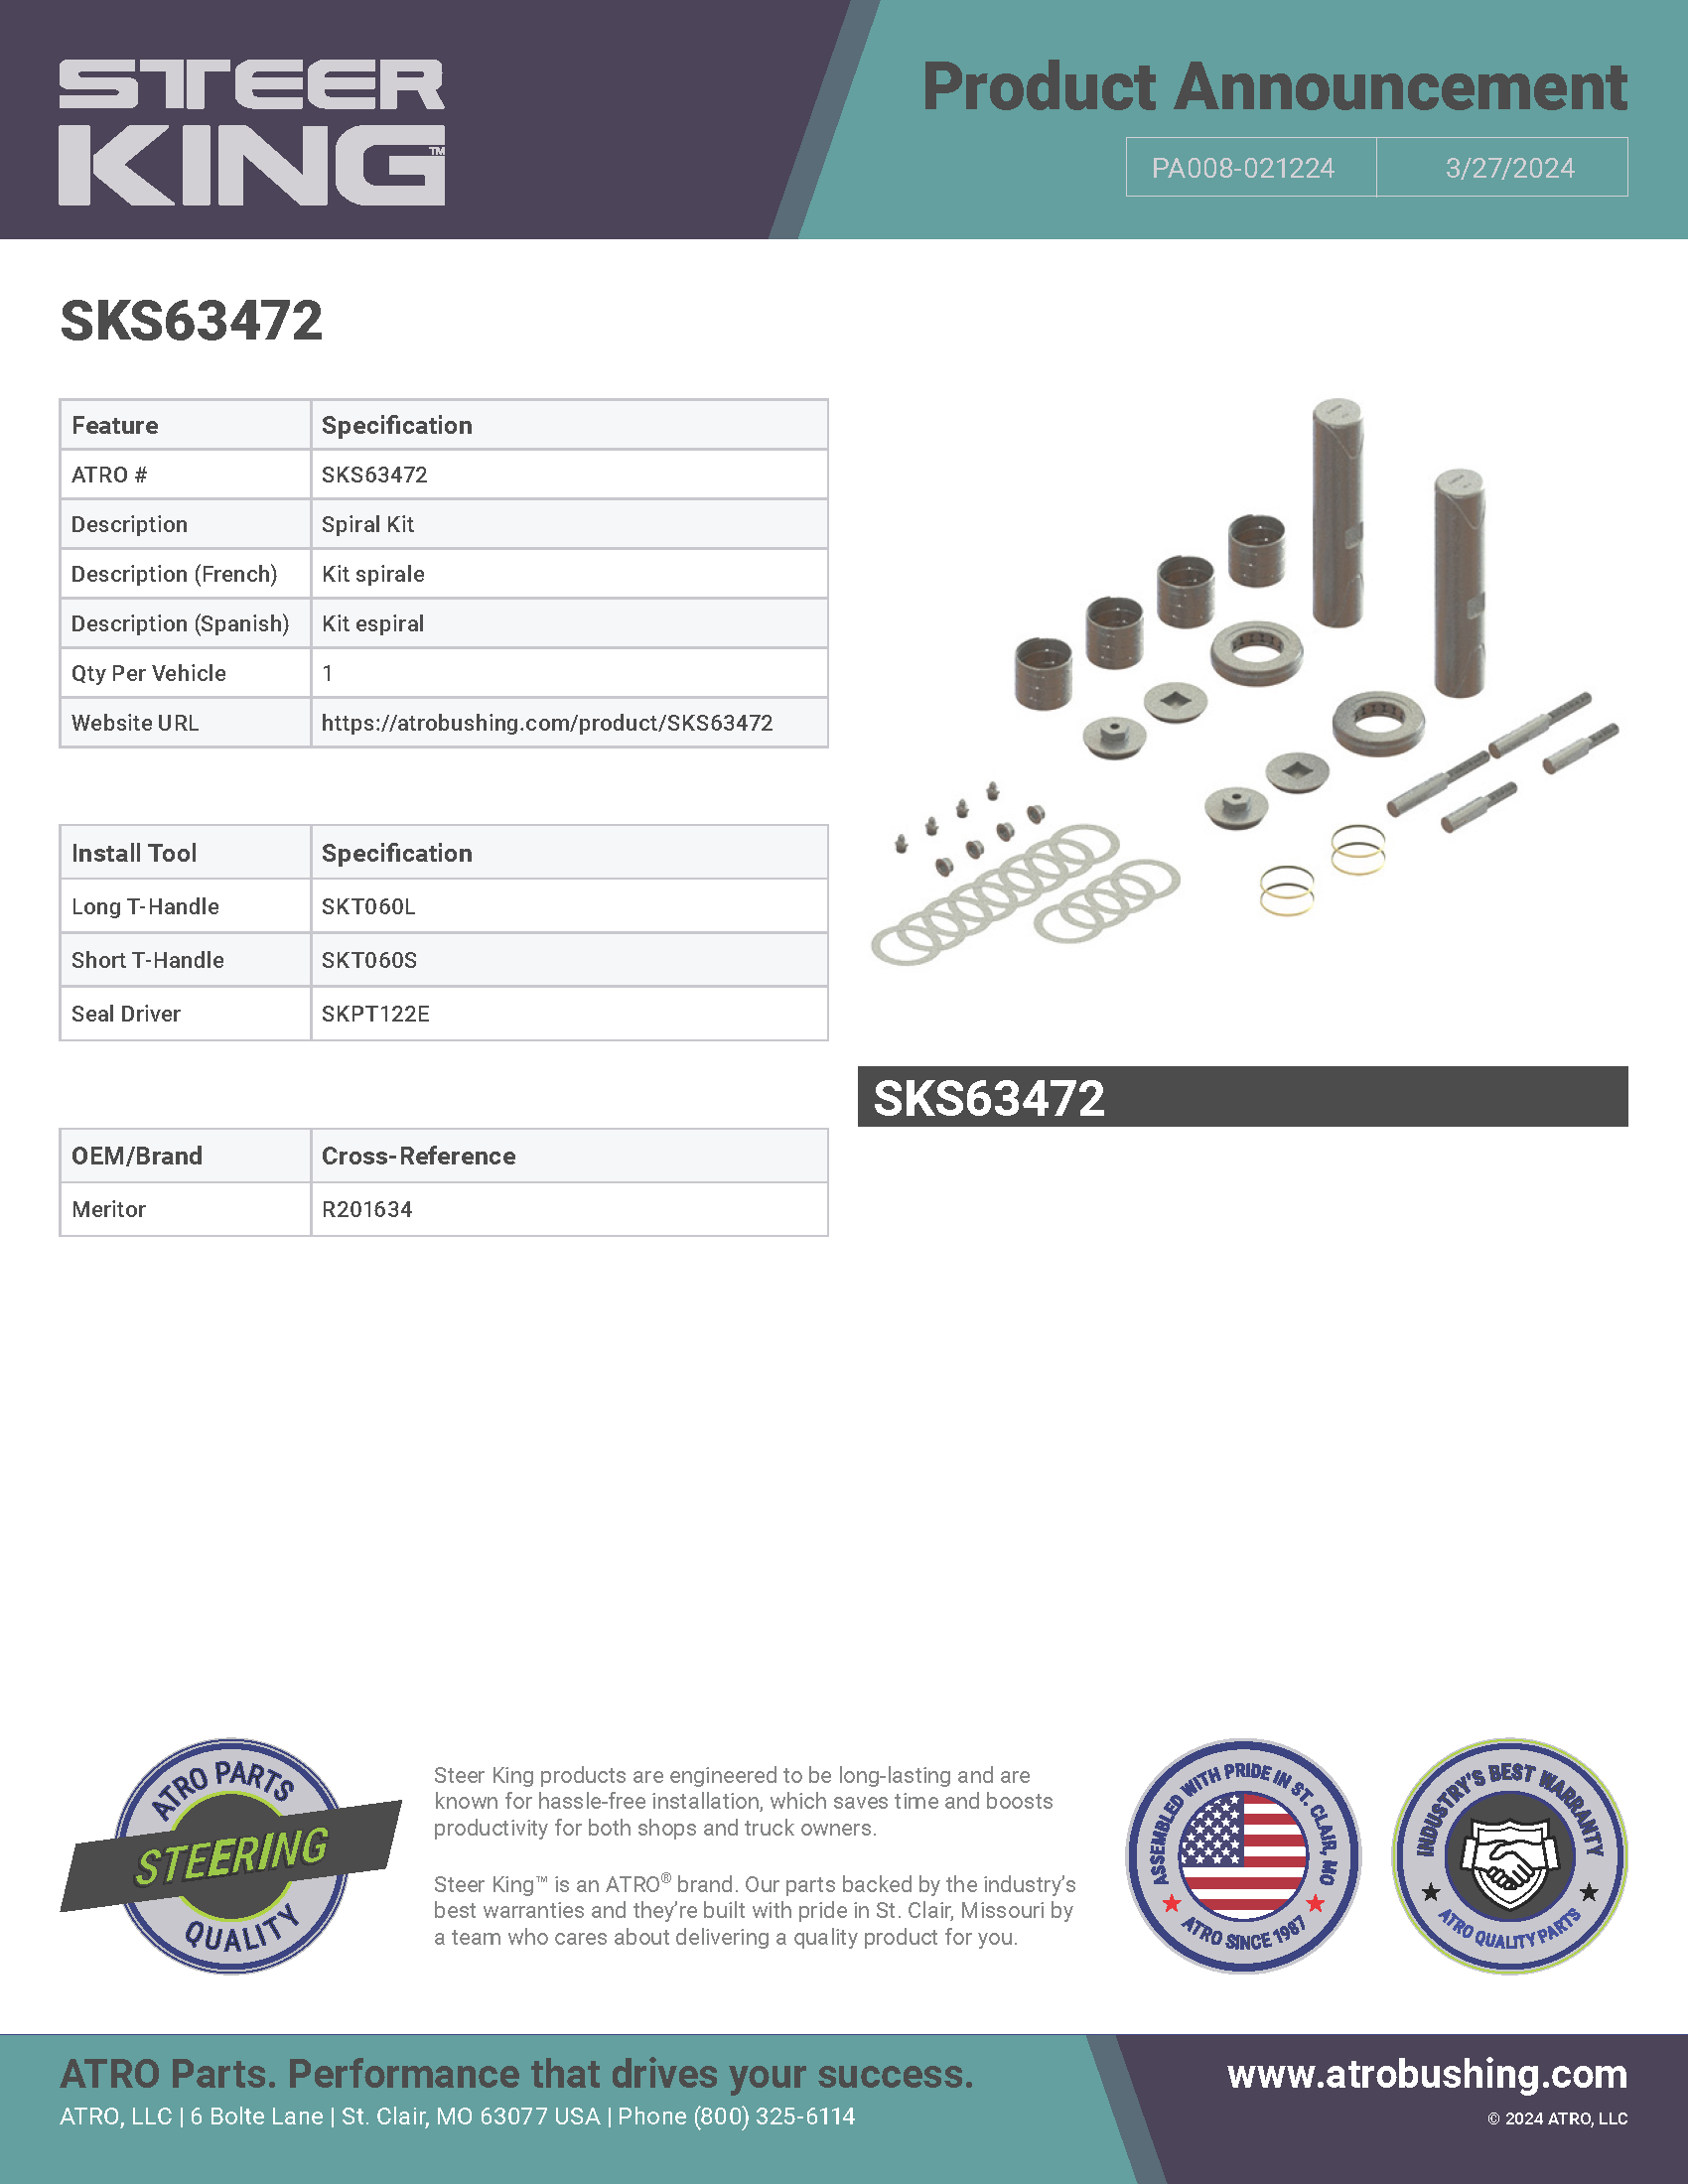 SKS63472 Spiral Kit PA008-021224